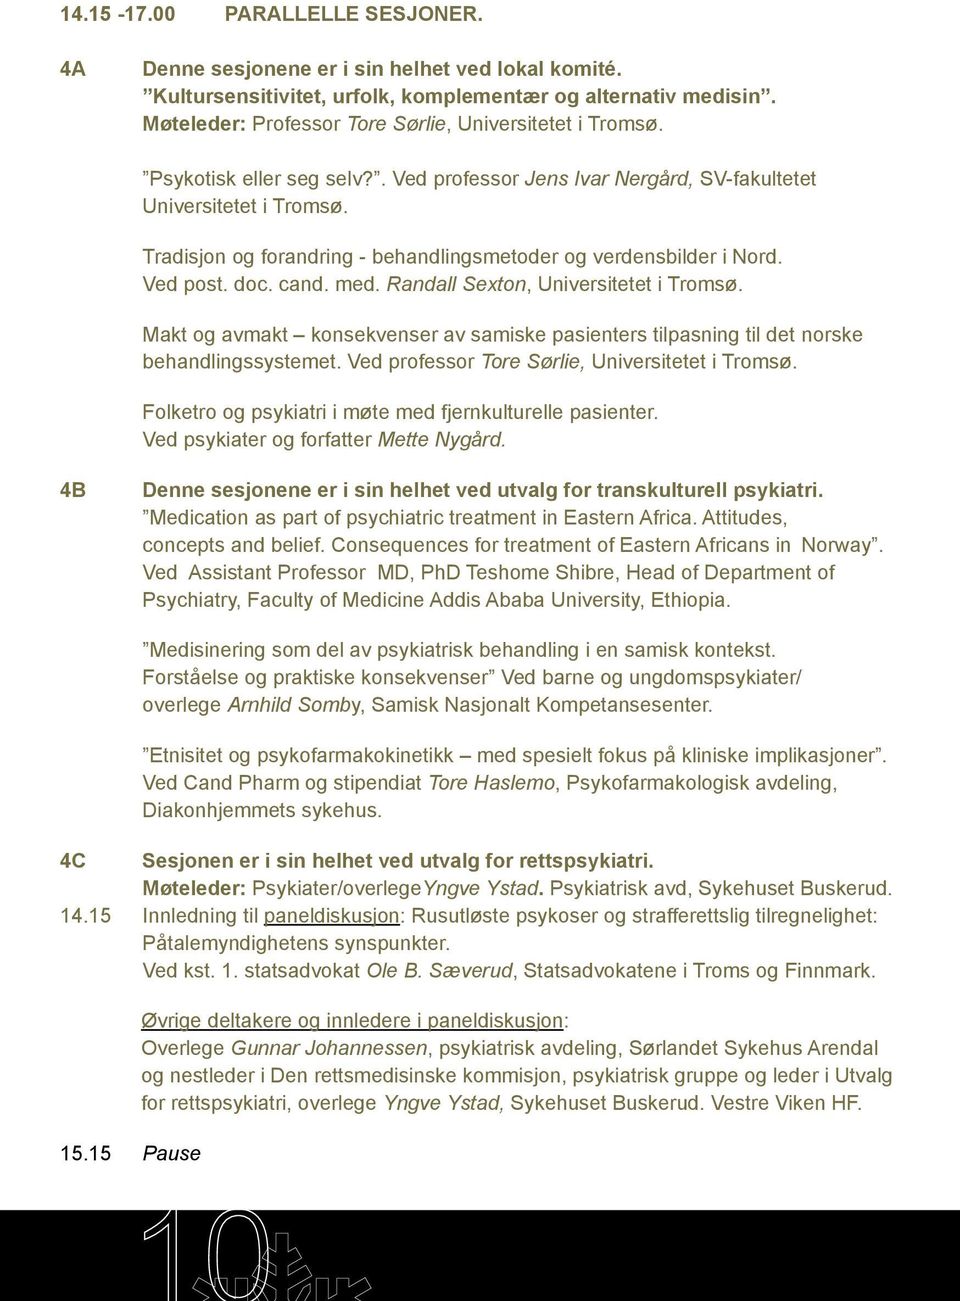 Tradisjon og forandring - behandlingsmetoder og verdensbilder i Nord. Ved post. doc. cand. med. Randall Sexton, Universitetet i Tromsø.